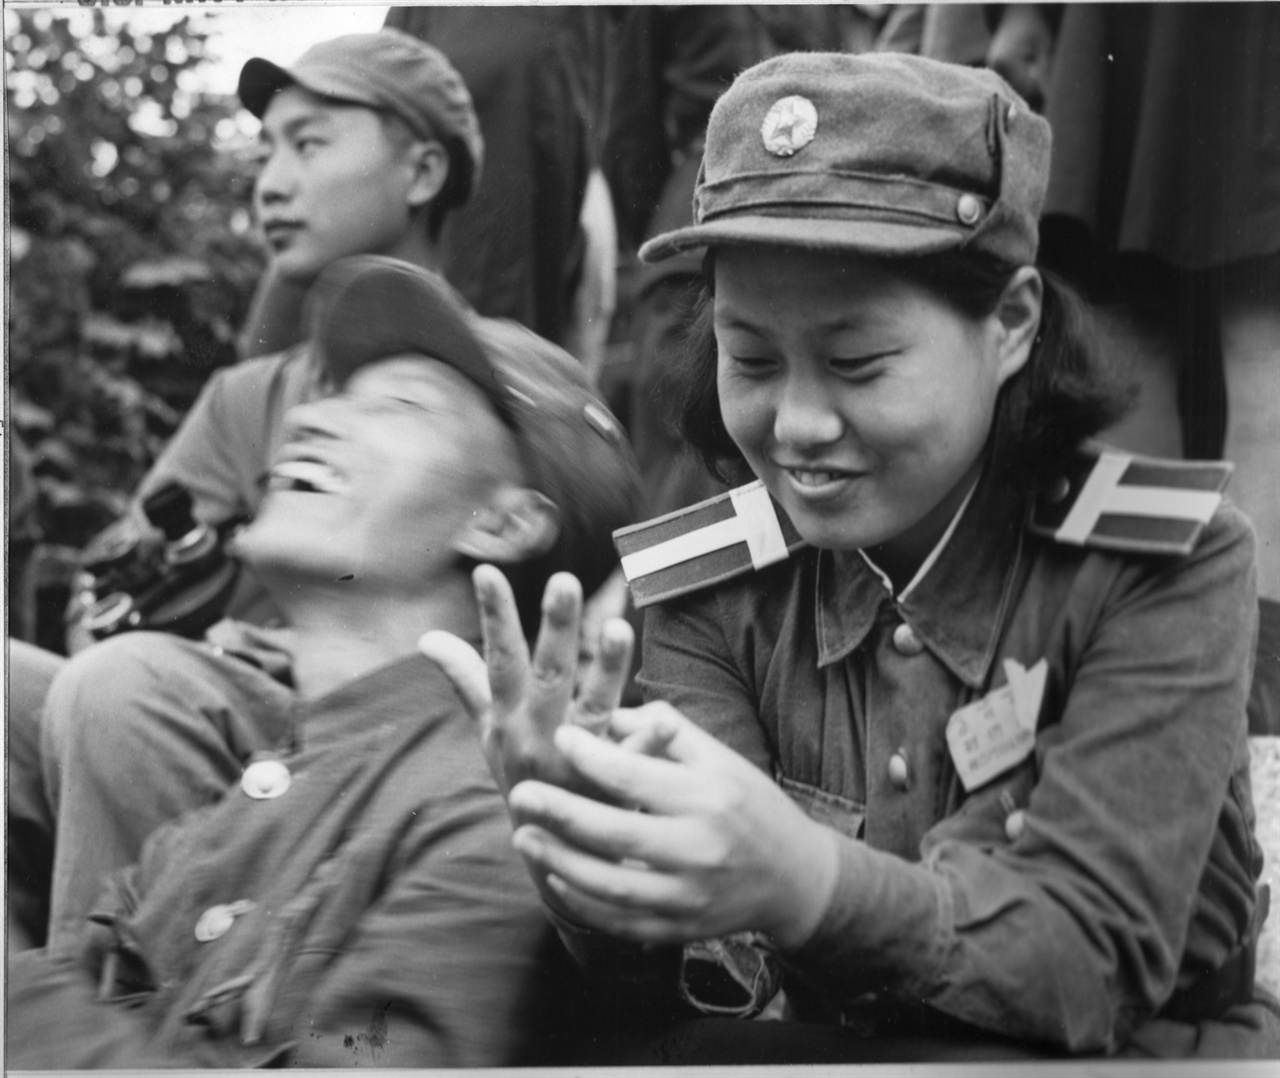   1951. 7. 31. 개성. 북한군 측 경비병.